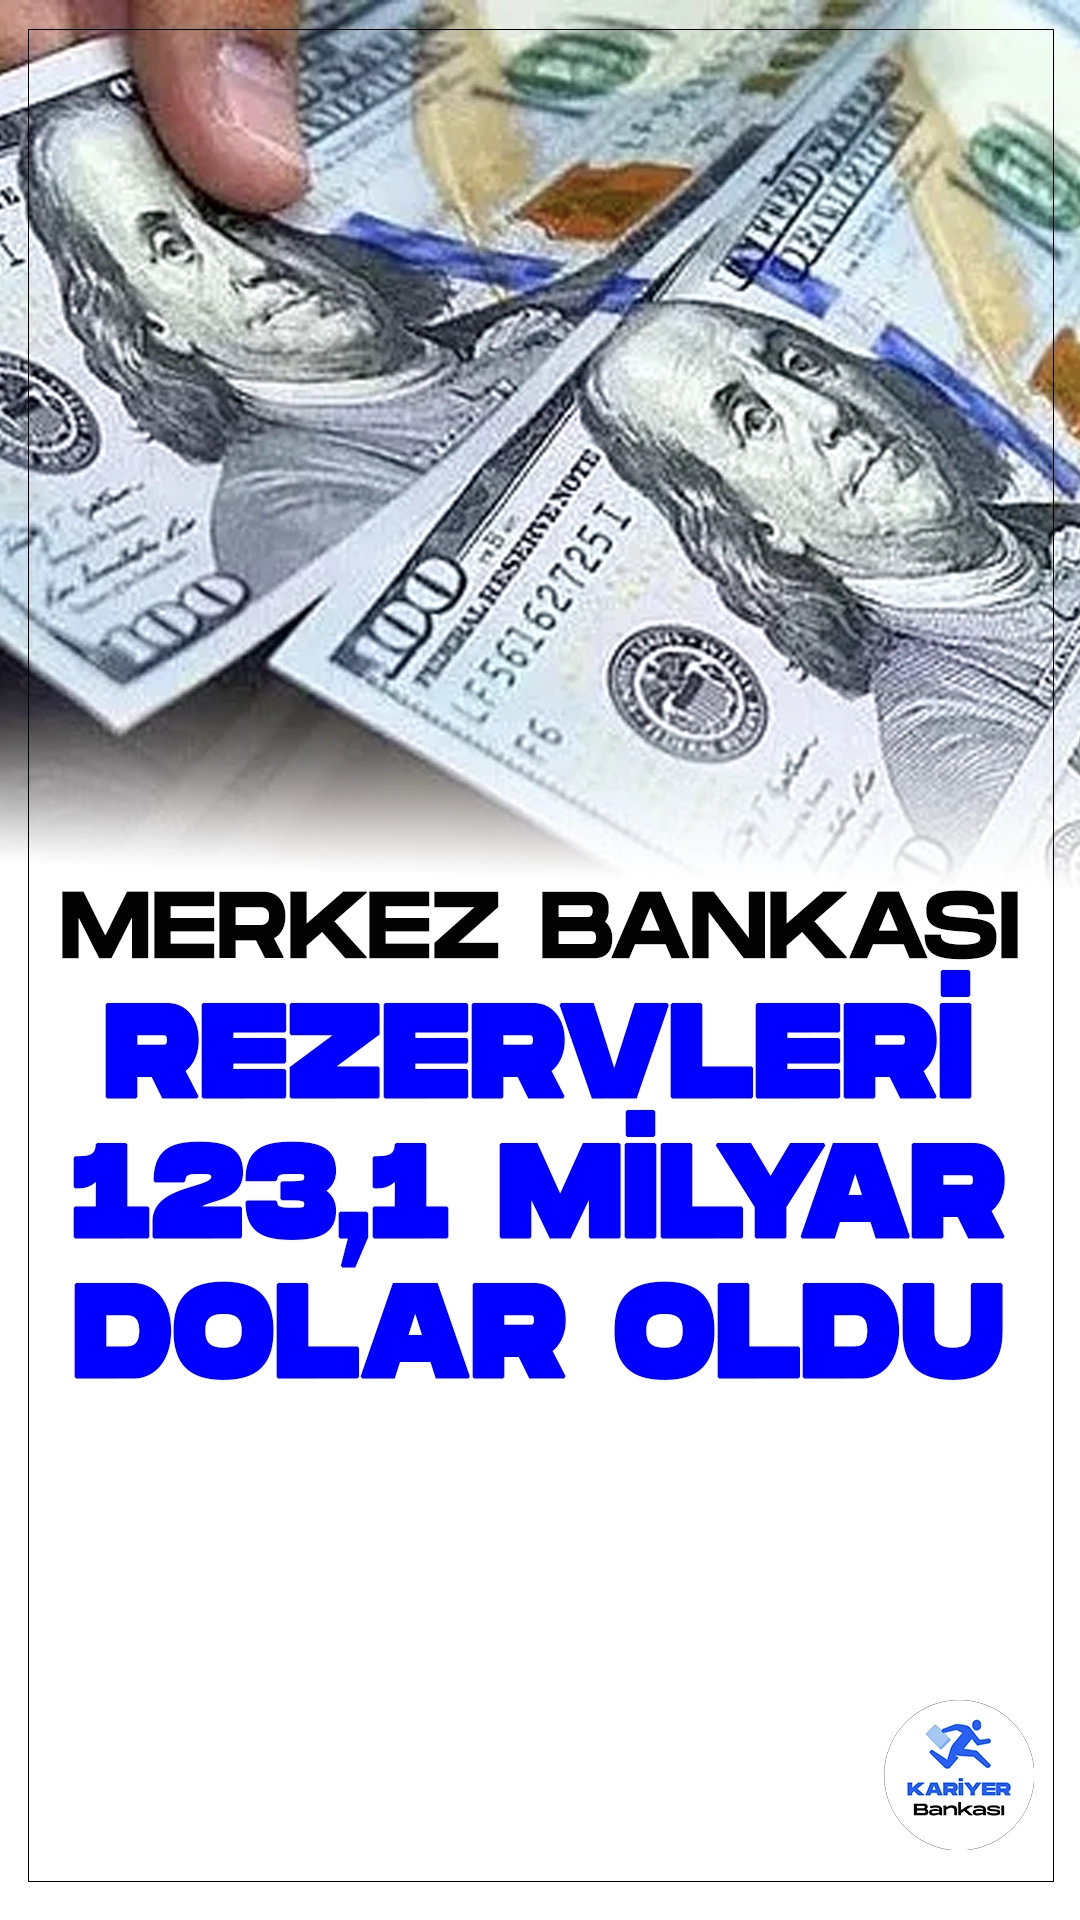 Merkez Bankası Rezervleri 123,1 Milyar Doları Gördü.Türkiye Cumhuriyet Merkez Bankası'nın (TCMB) güncel haftalık para ve banka istatistikleri kamuoyuna duyuruldu.